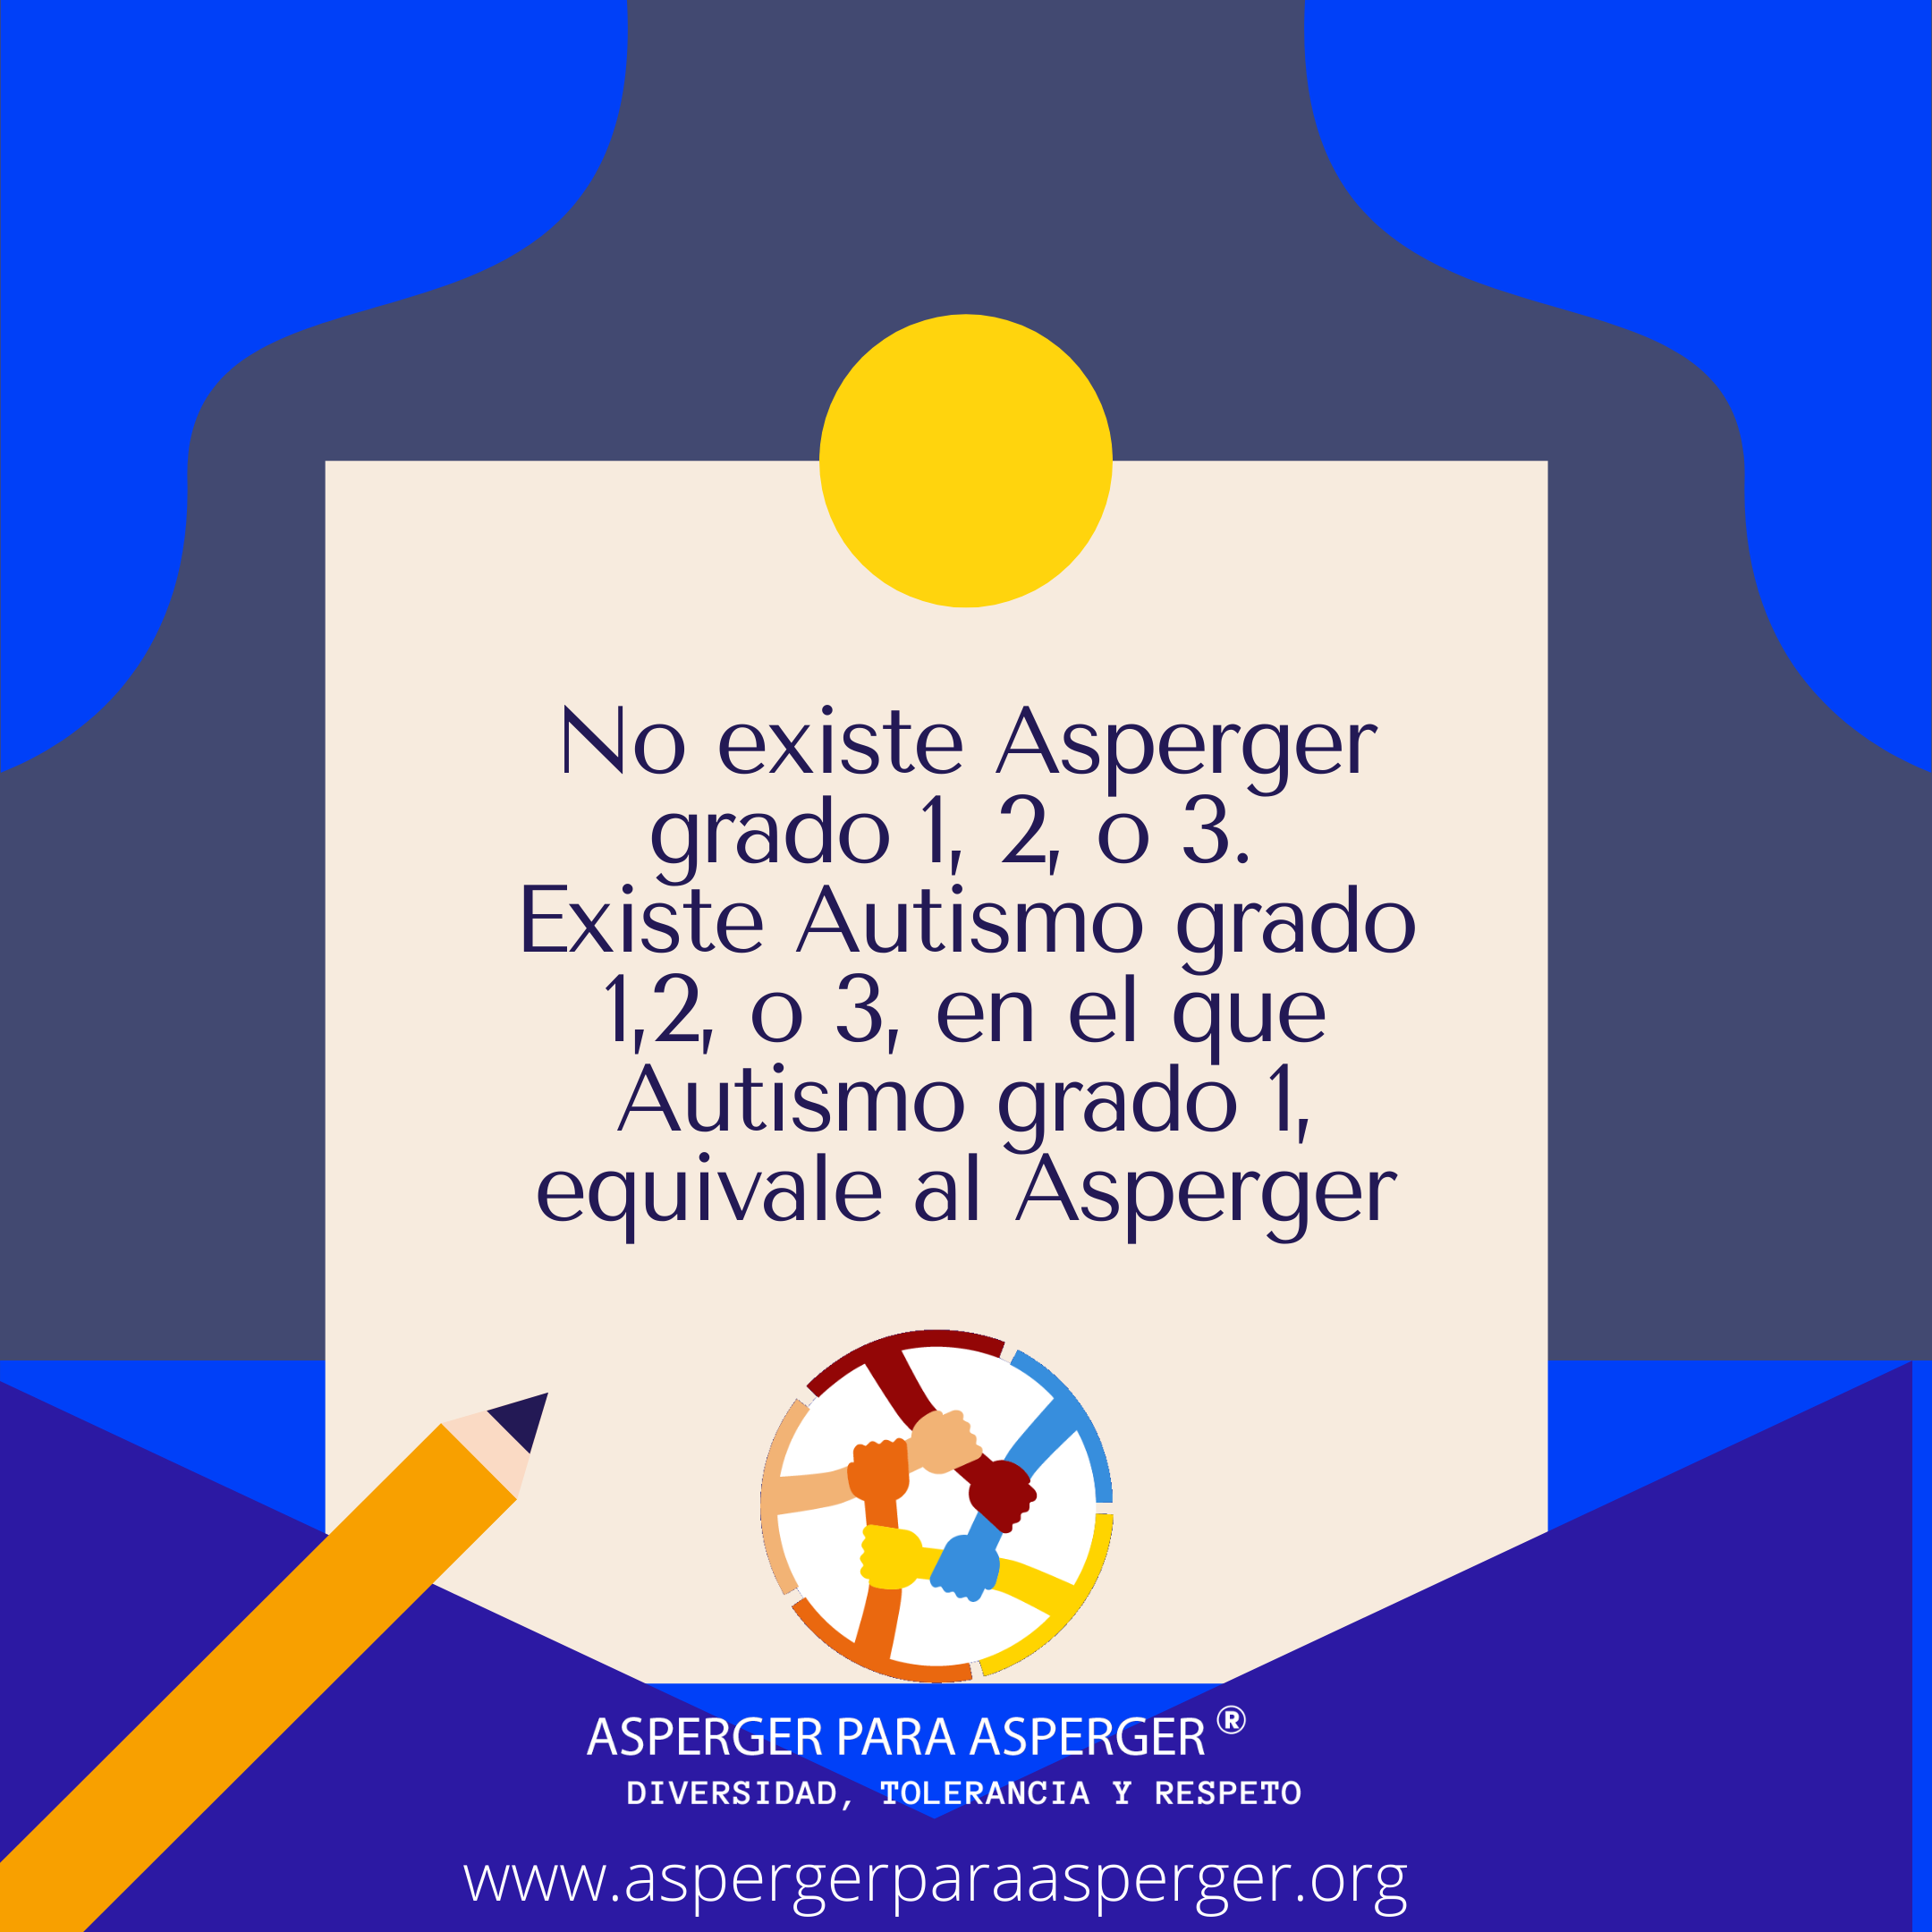 Semáforo amarillo: No existe grado 1, 2 o, 3 de Asperger. Lo que existe es Grado 1,2 o, 3 de Autismo, en el que el Asperger equivale a Autismo grado 1